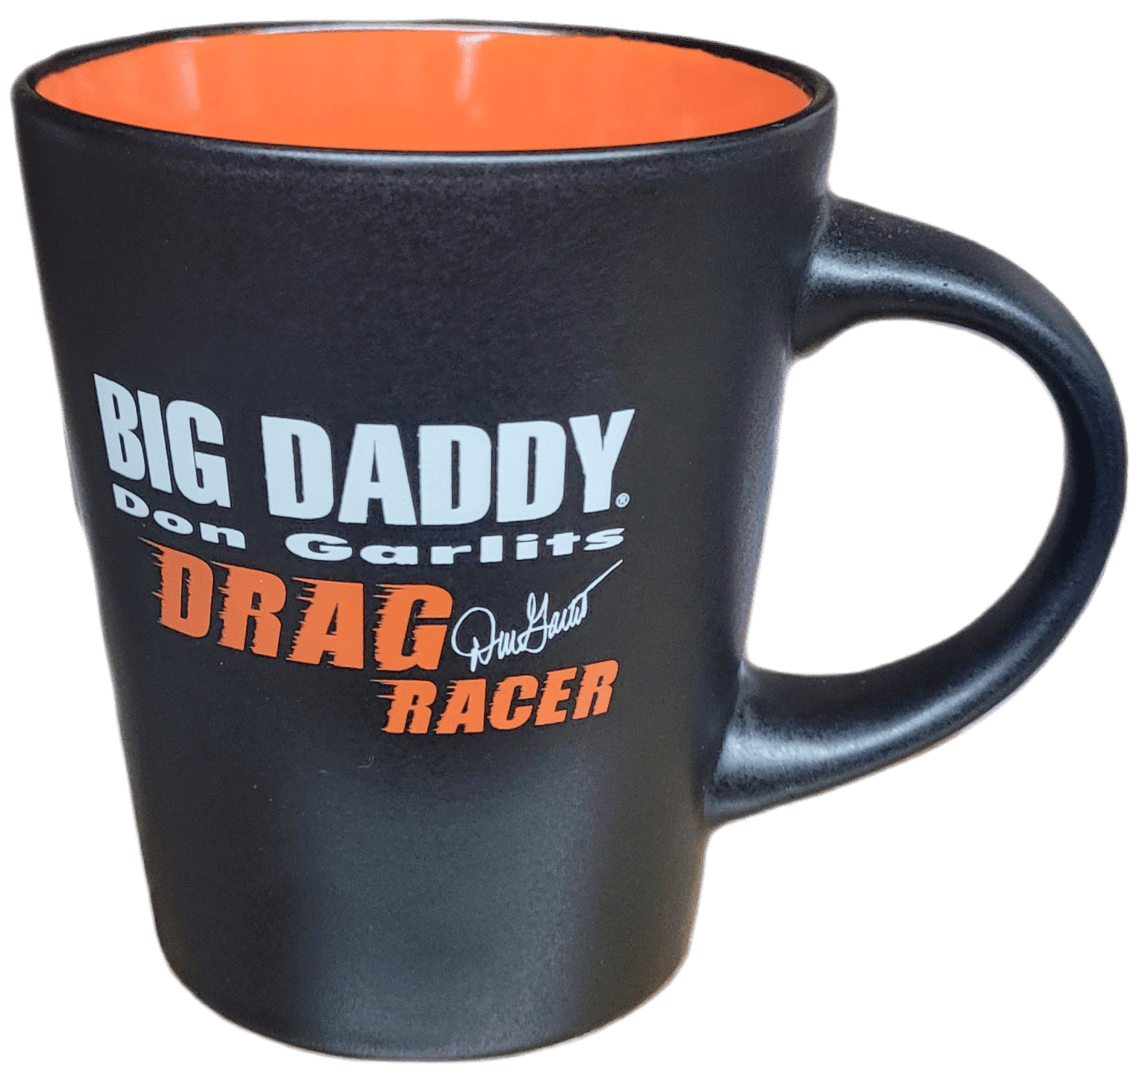 Drag Racer Coffee Mug on display